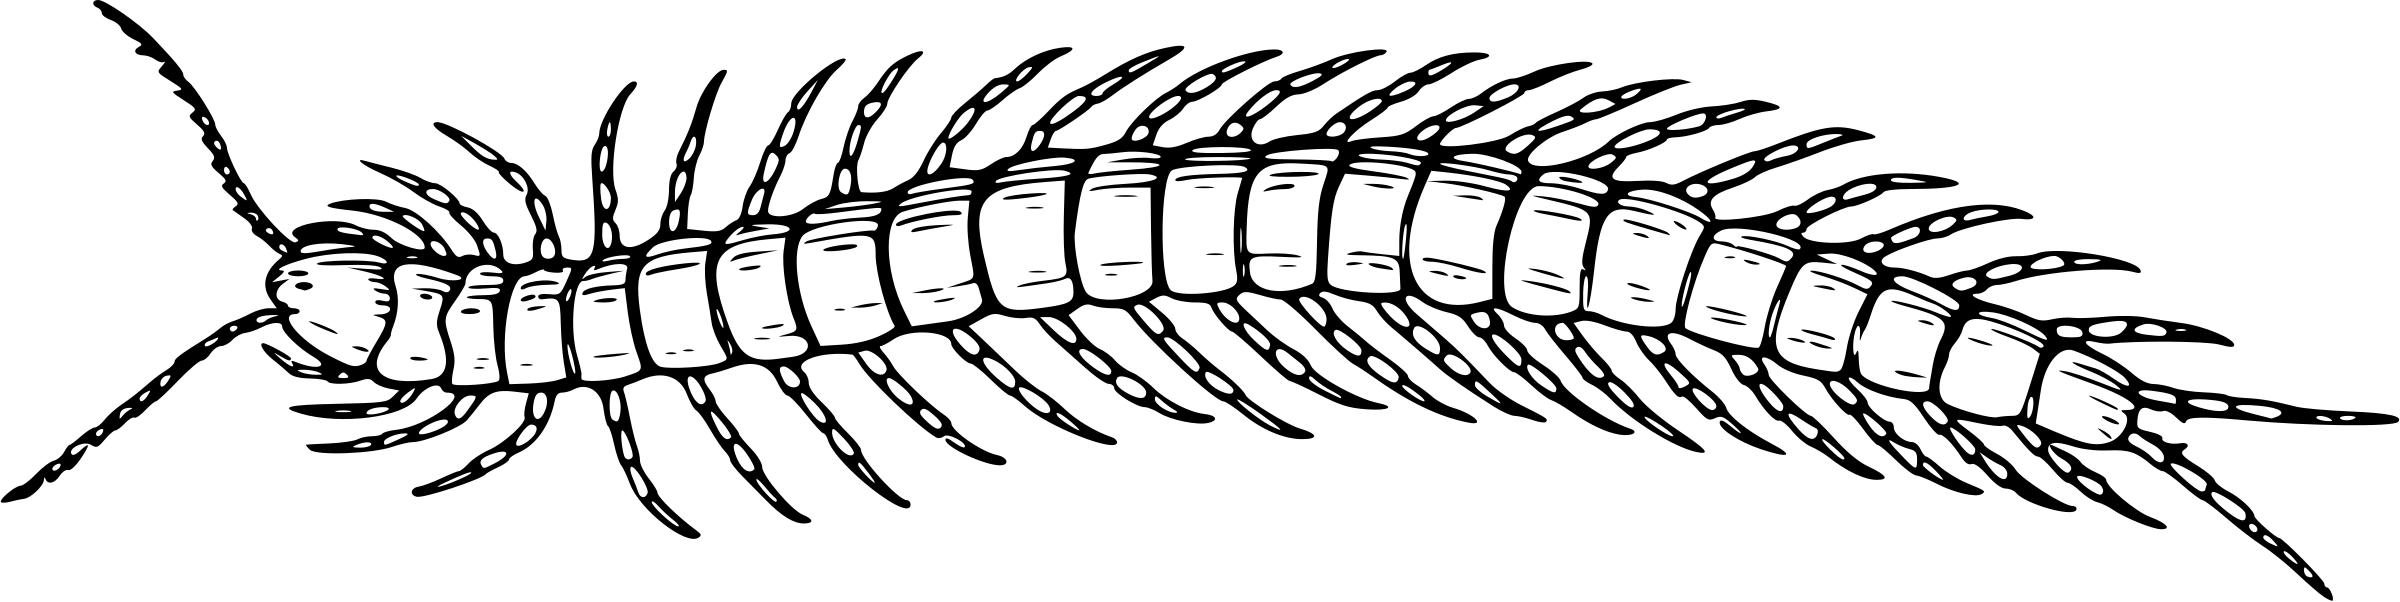 Centipede 3 png